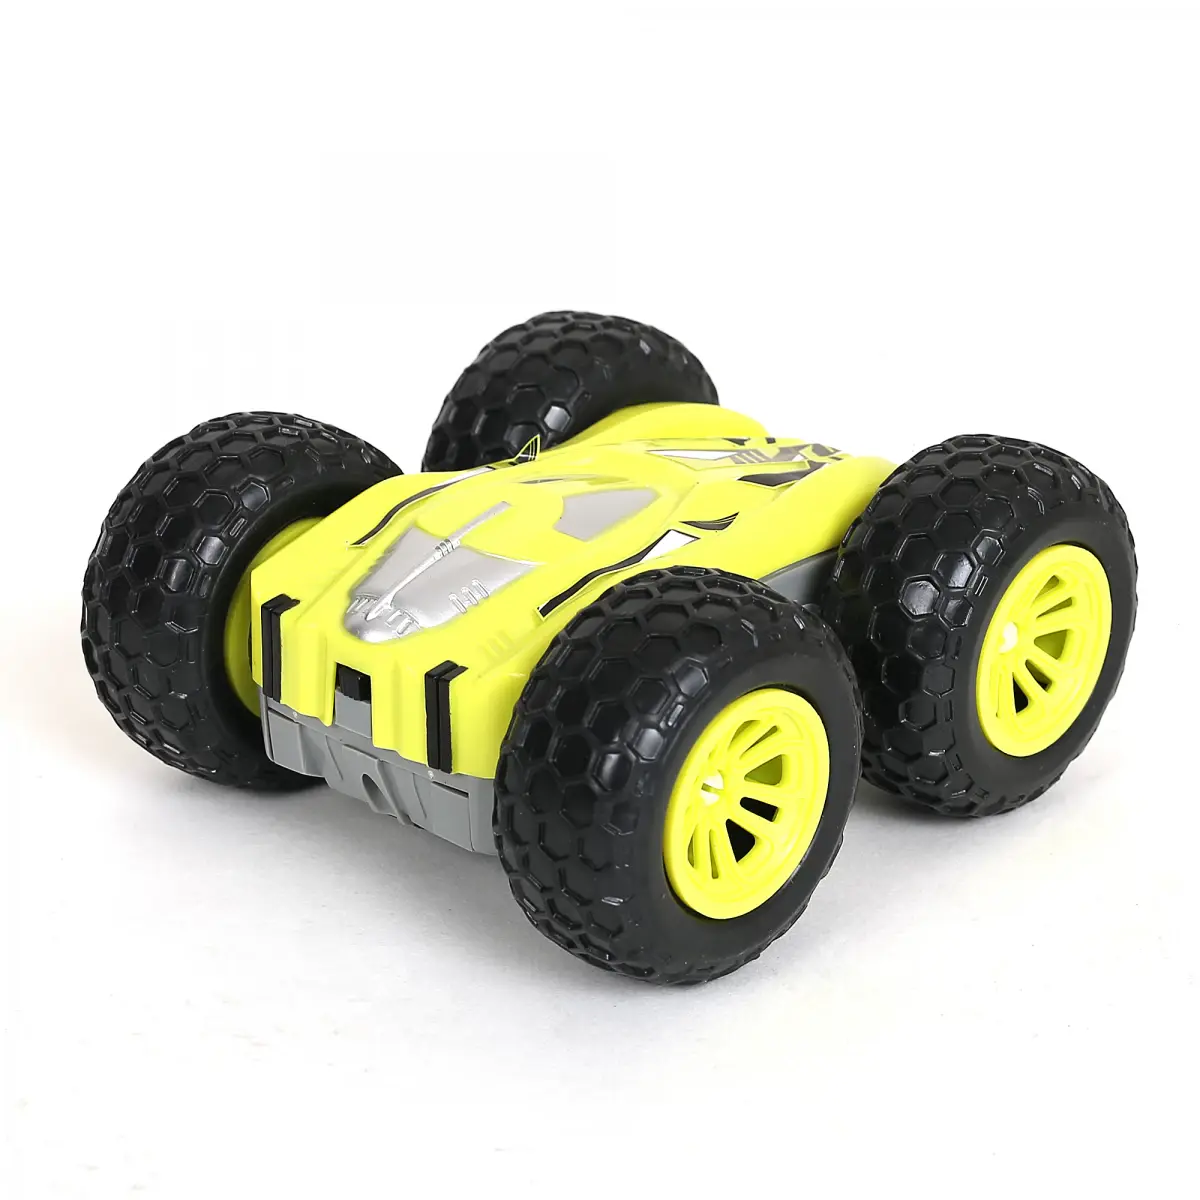 Ralleyz Flashing 2 Sided Stunt Car, Remote Control Toys for Kids, 6Y+, Grey